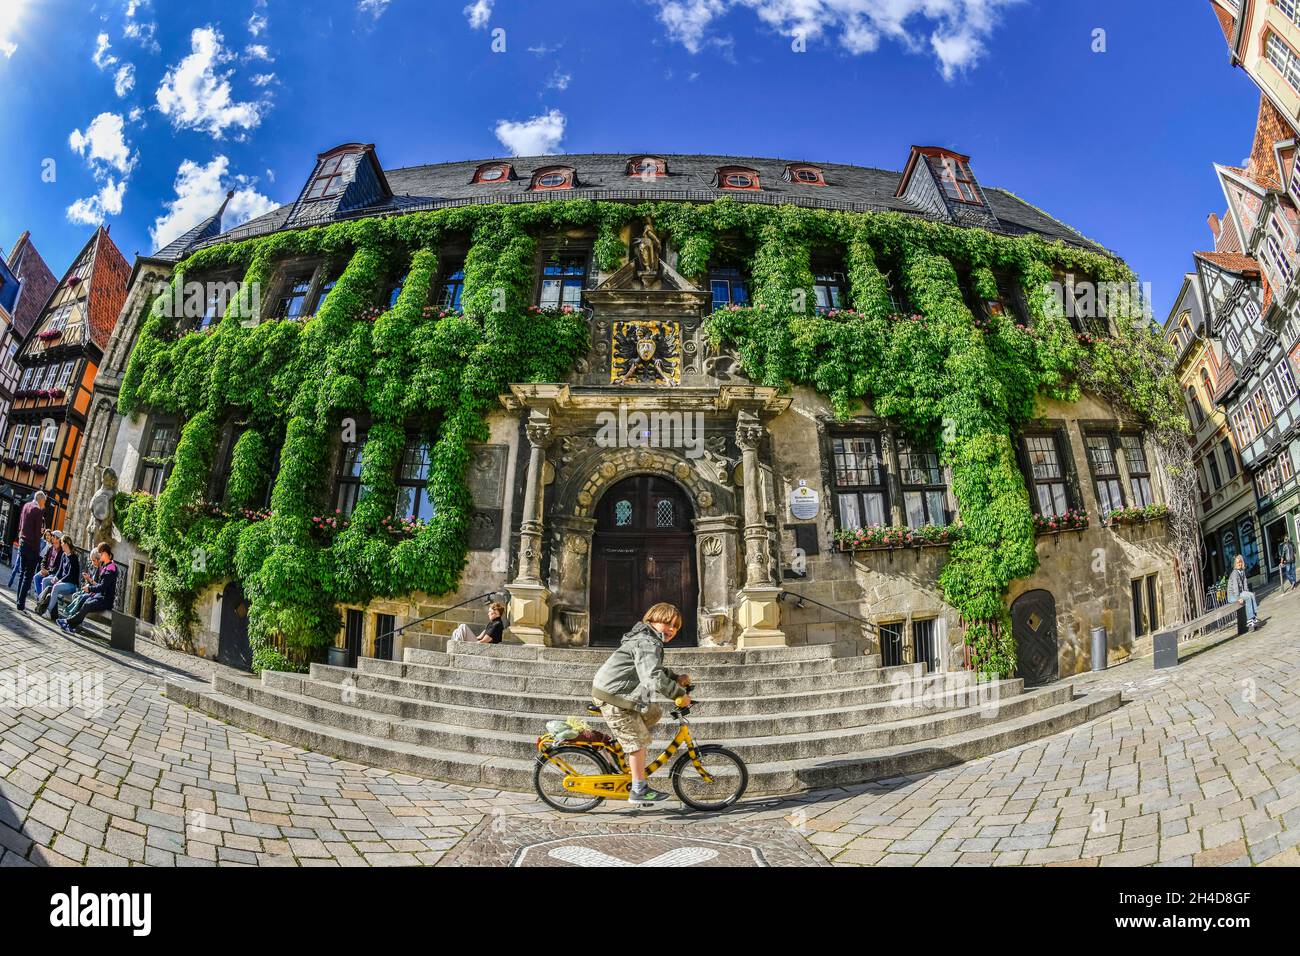 Il Rathaus, Marktplatz, Altstadt, Quedlinburg, Sachsen-Anhalt, Deutschland Foto Stock